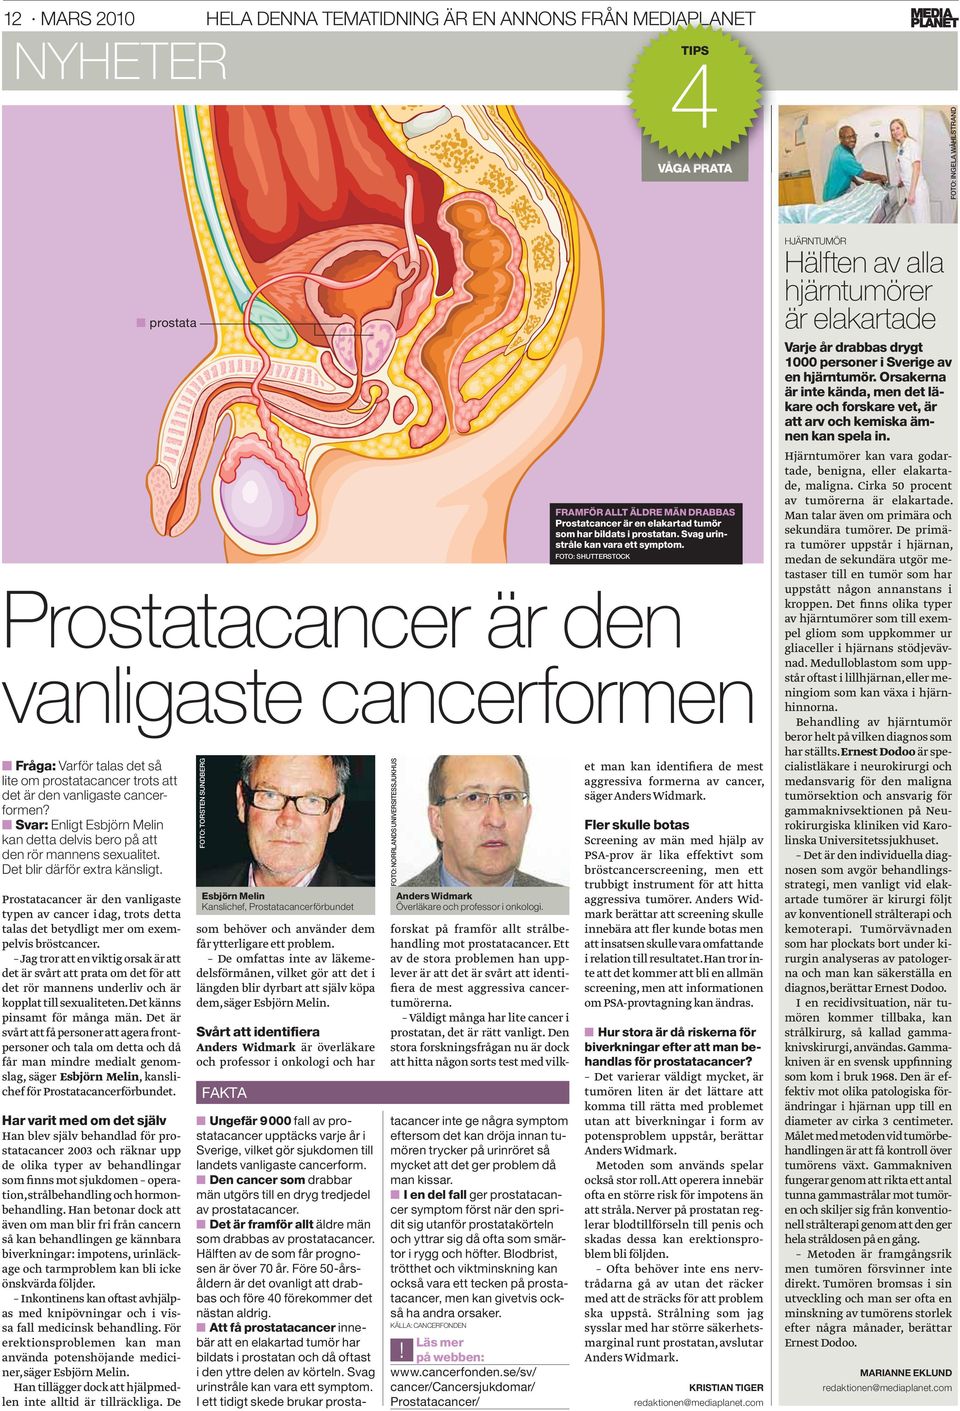 Prostatacancer är den vanligaste typen av cancer i dag, trots detta talas det betydligt mer om exempelvis bröstcancer.